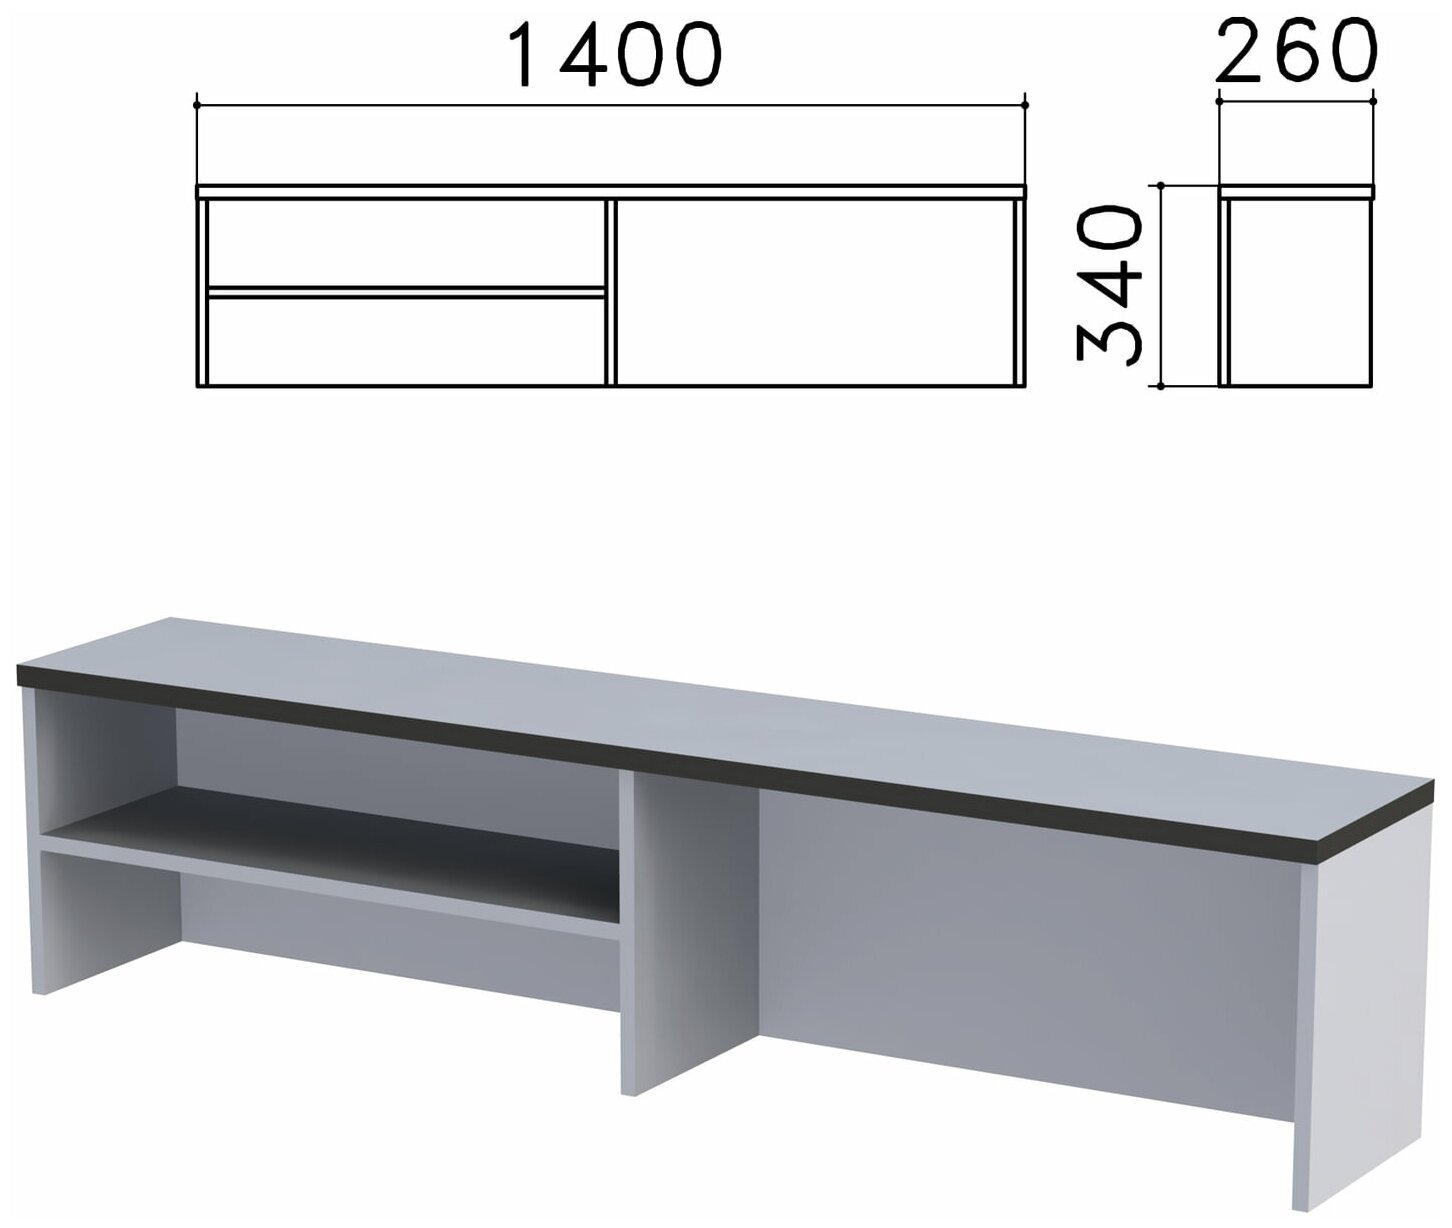 Надстройка для стола письменного "Монолит" (ш1400*г260*в340 мм), 1 полка, цвет серый, НМ38.11